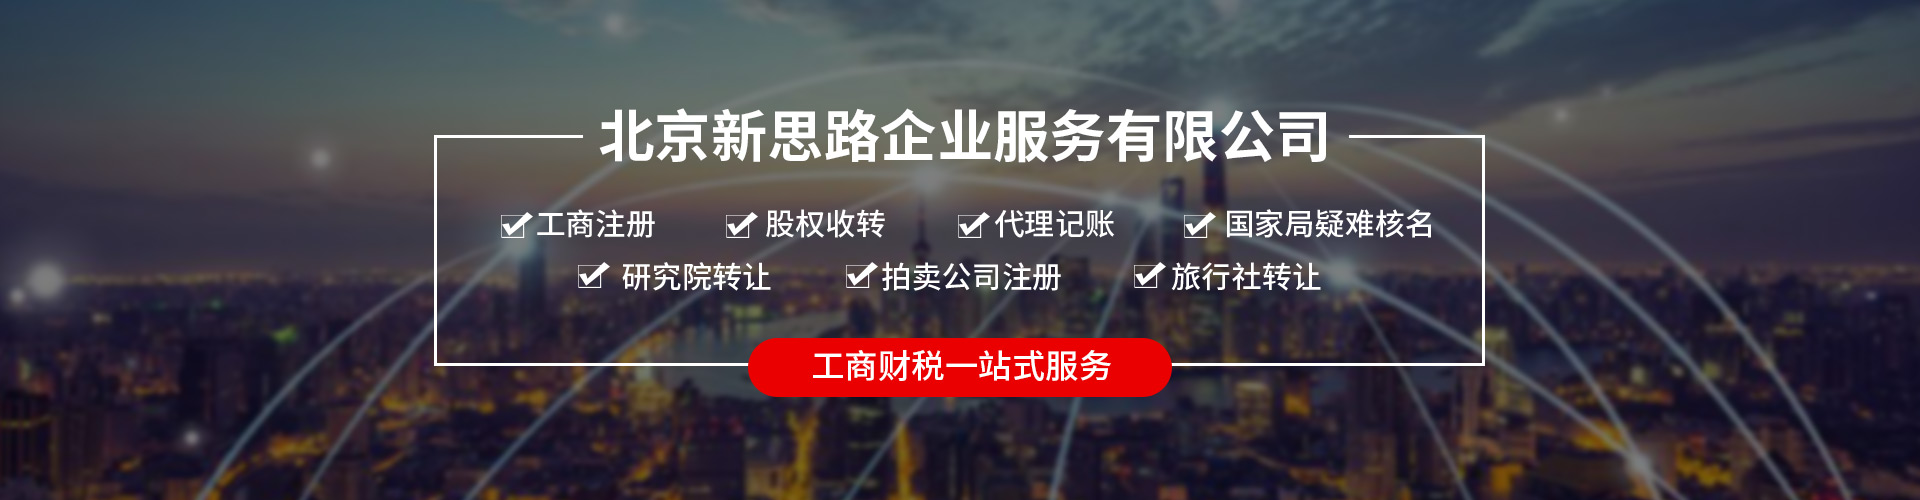 申请北京出境旅游公司的价格